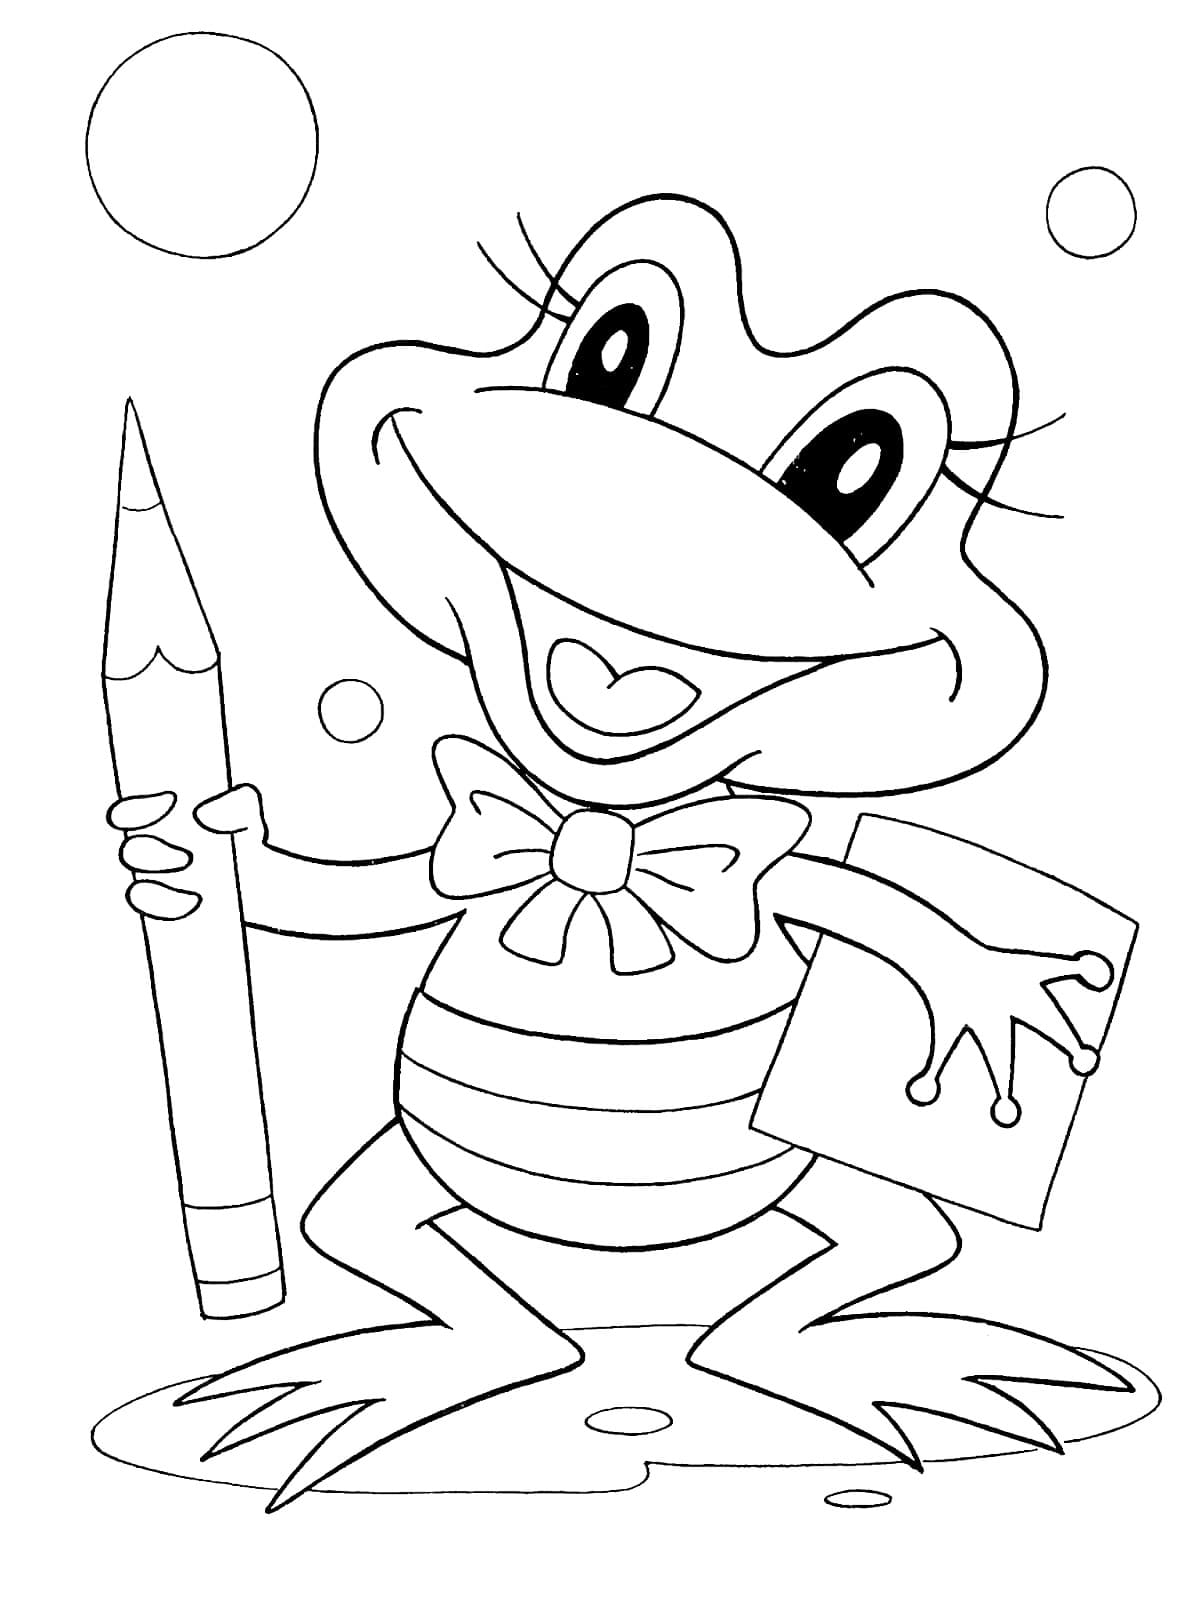 무료 인쇄 가능한 귀여운 개구리 coloring page